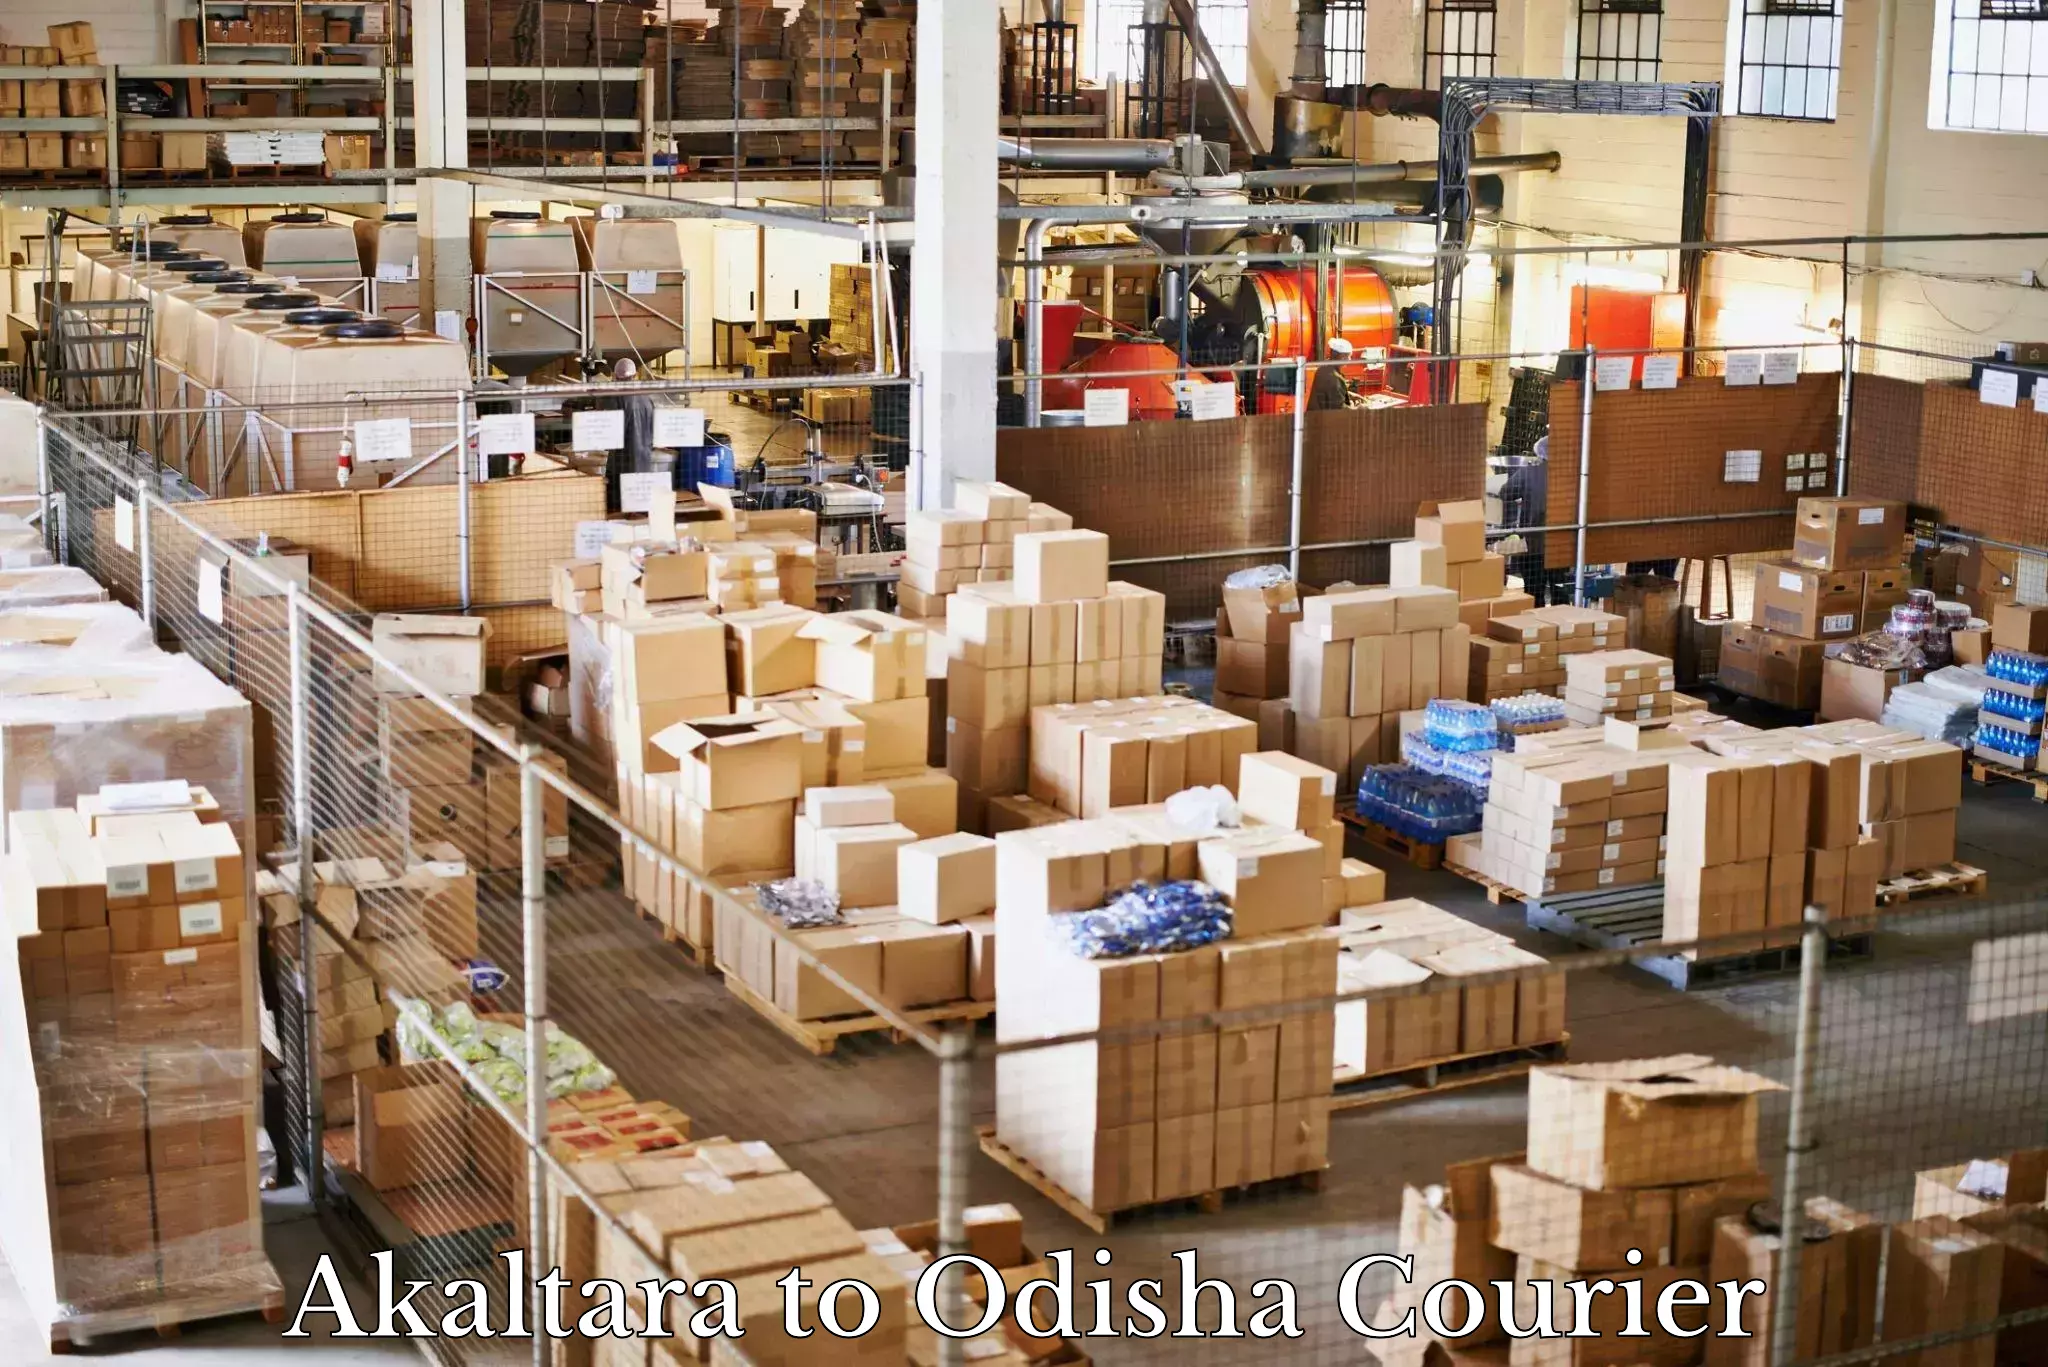 Trusted moving company Akaltara to Asika